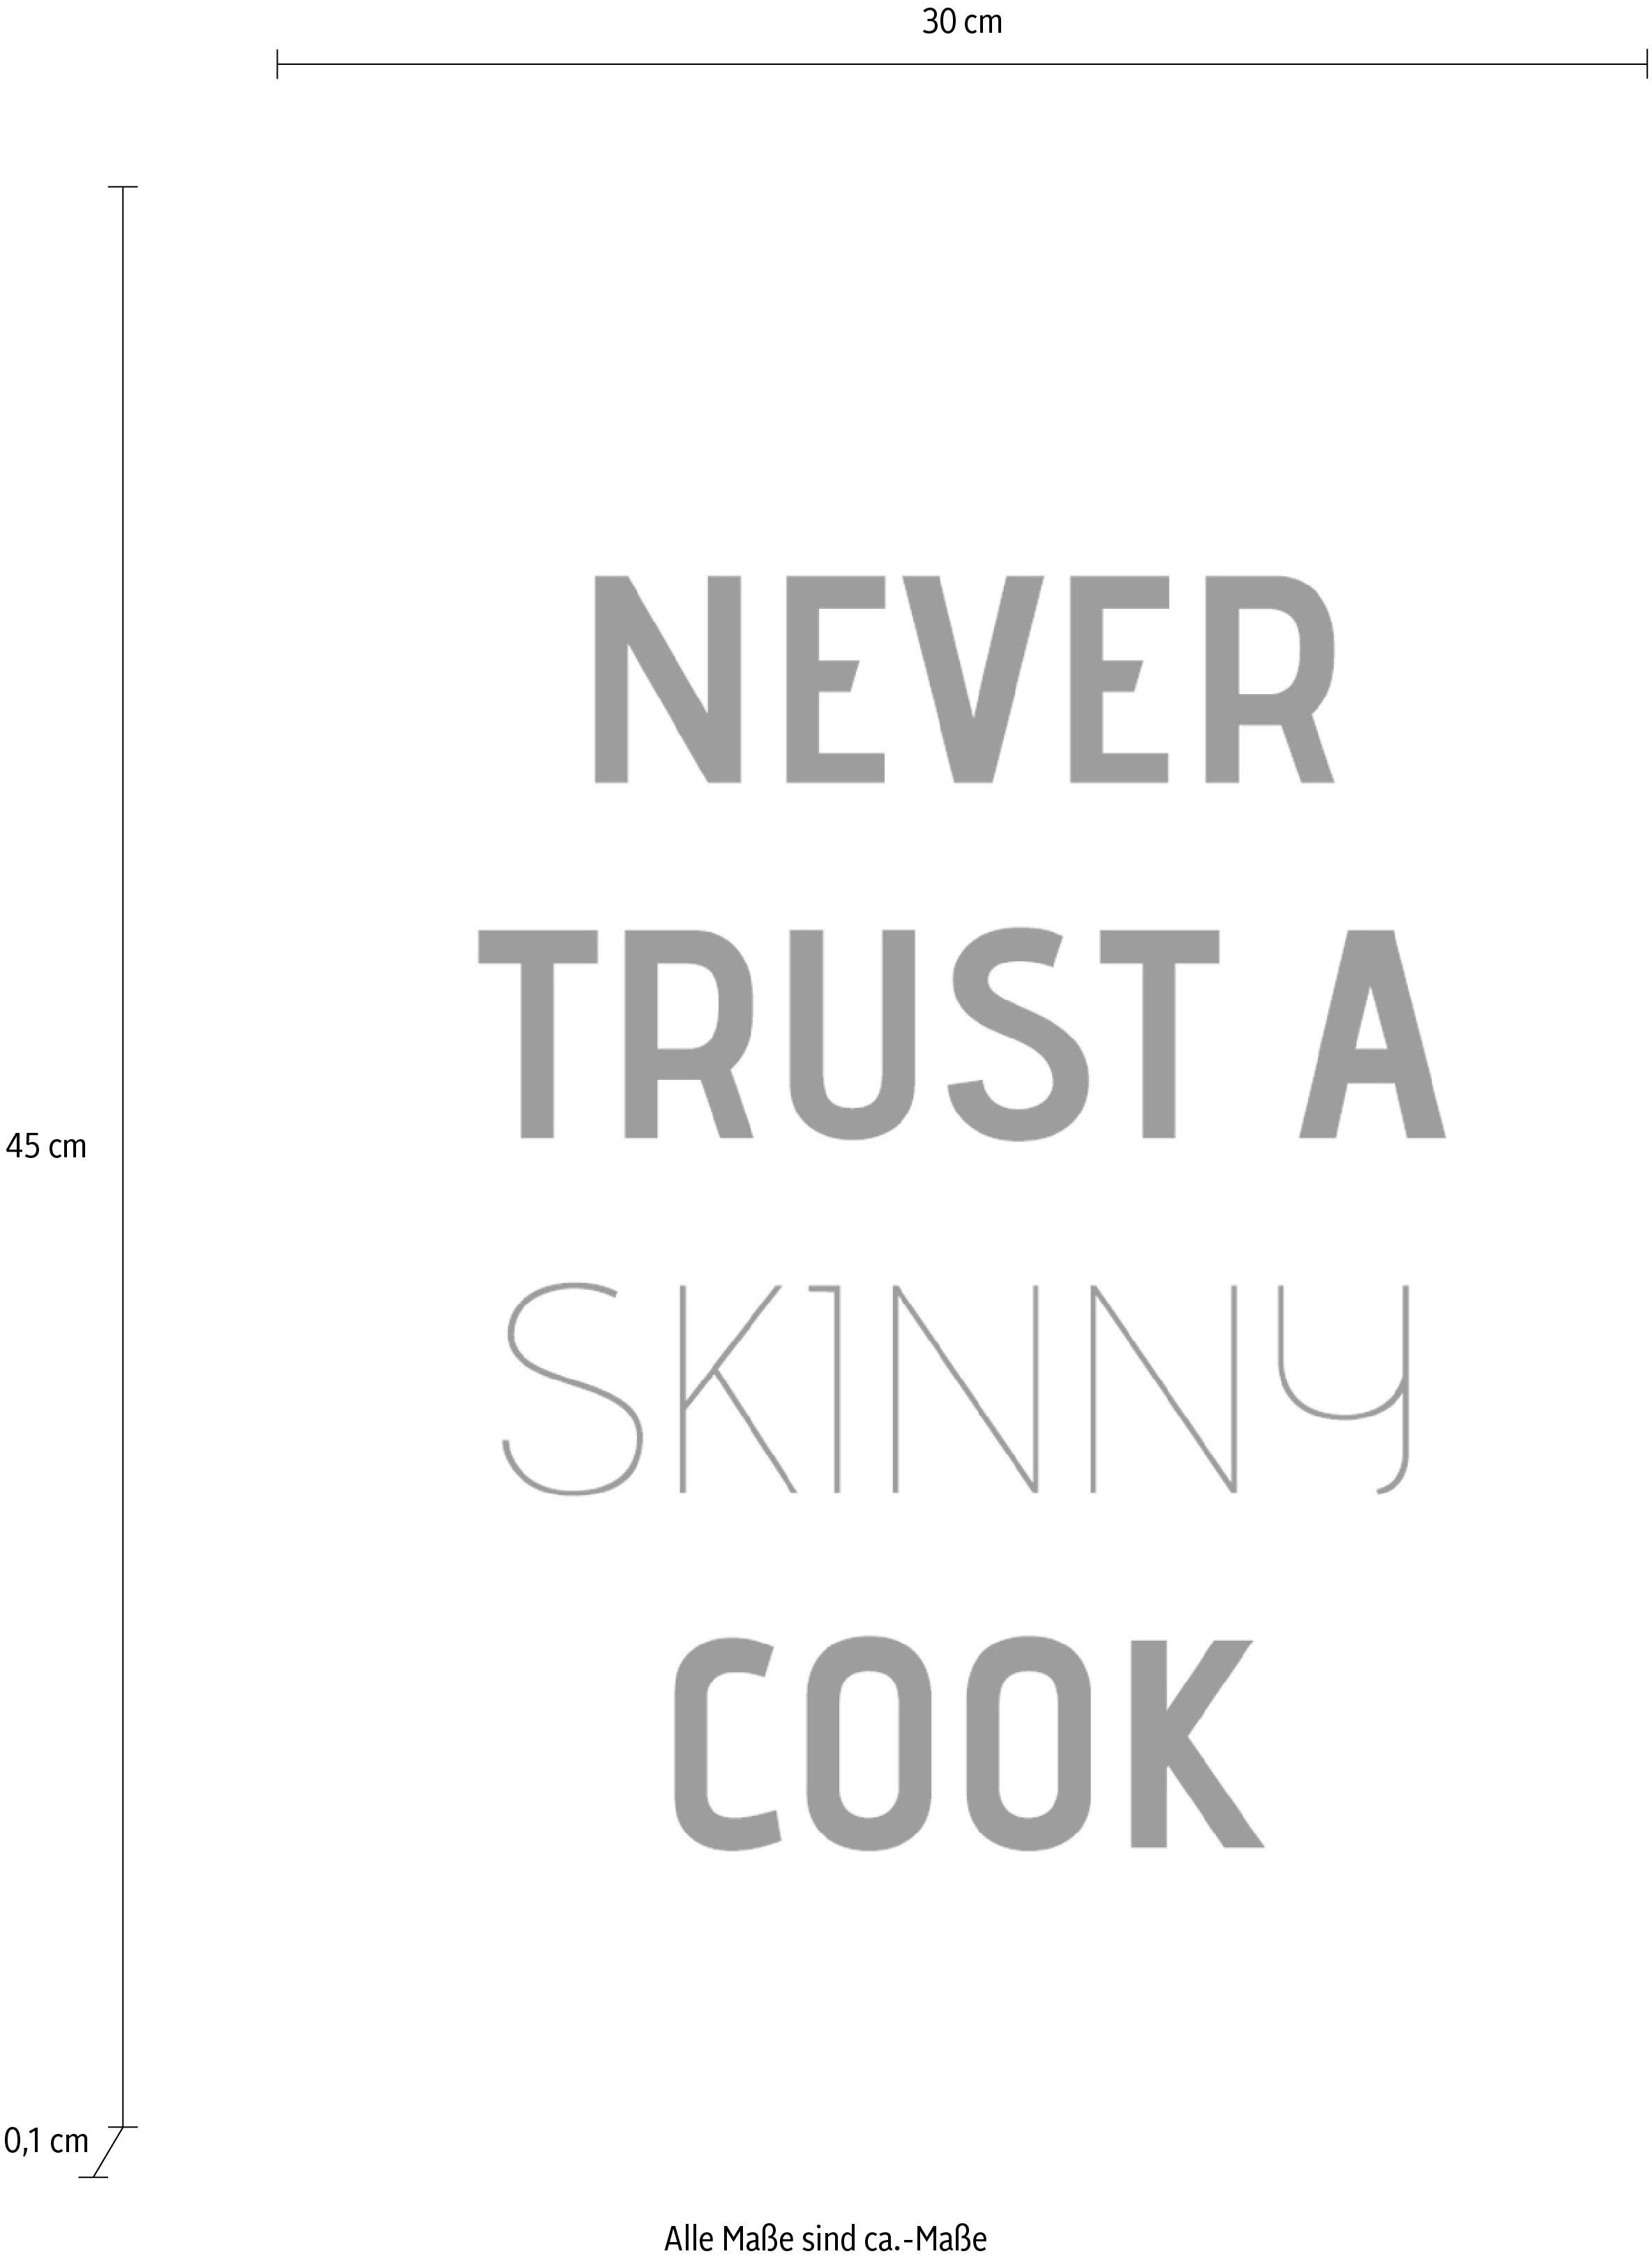 Wanddekoobjekt cook, queence Never trust skinny auf a Stahlblech Schriftzug